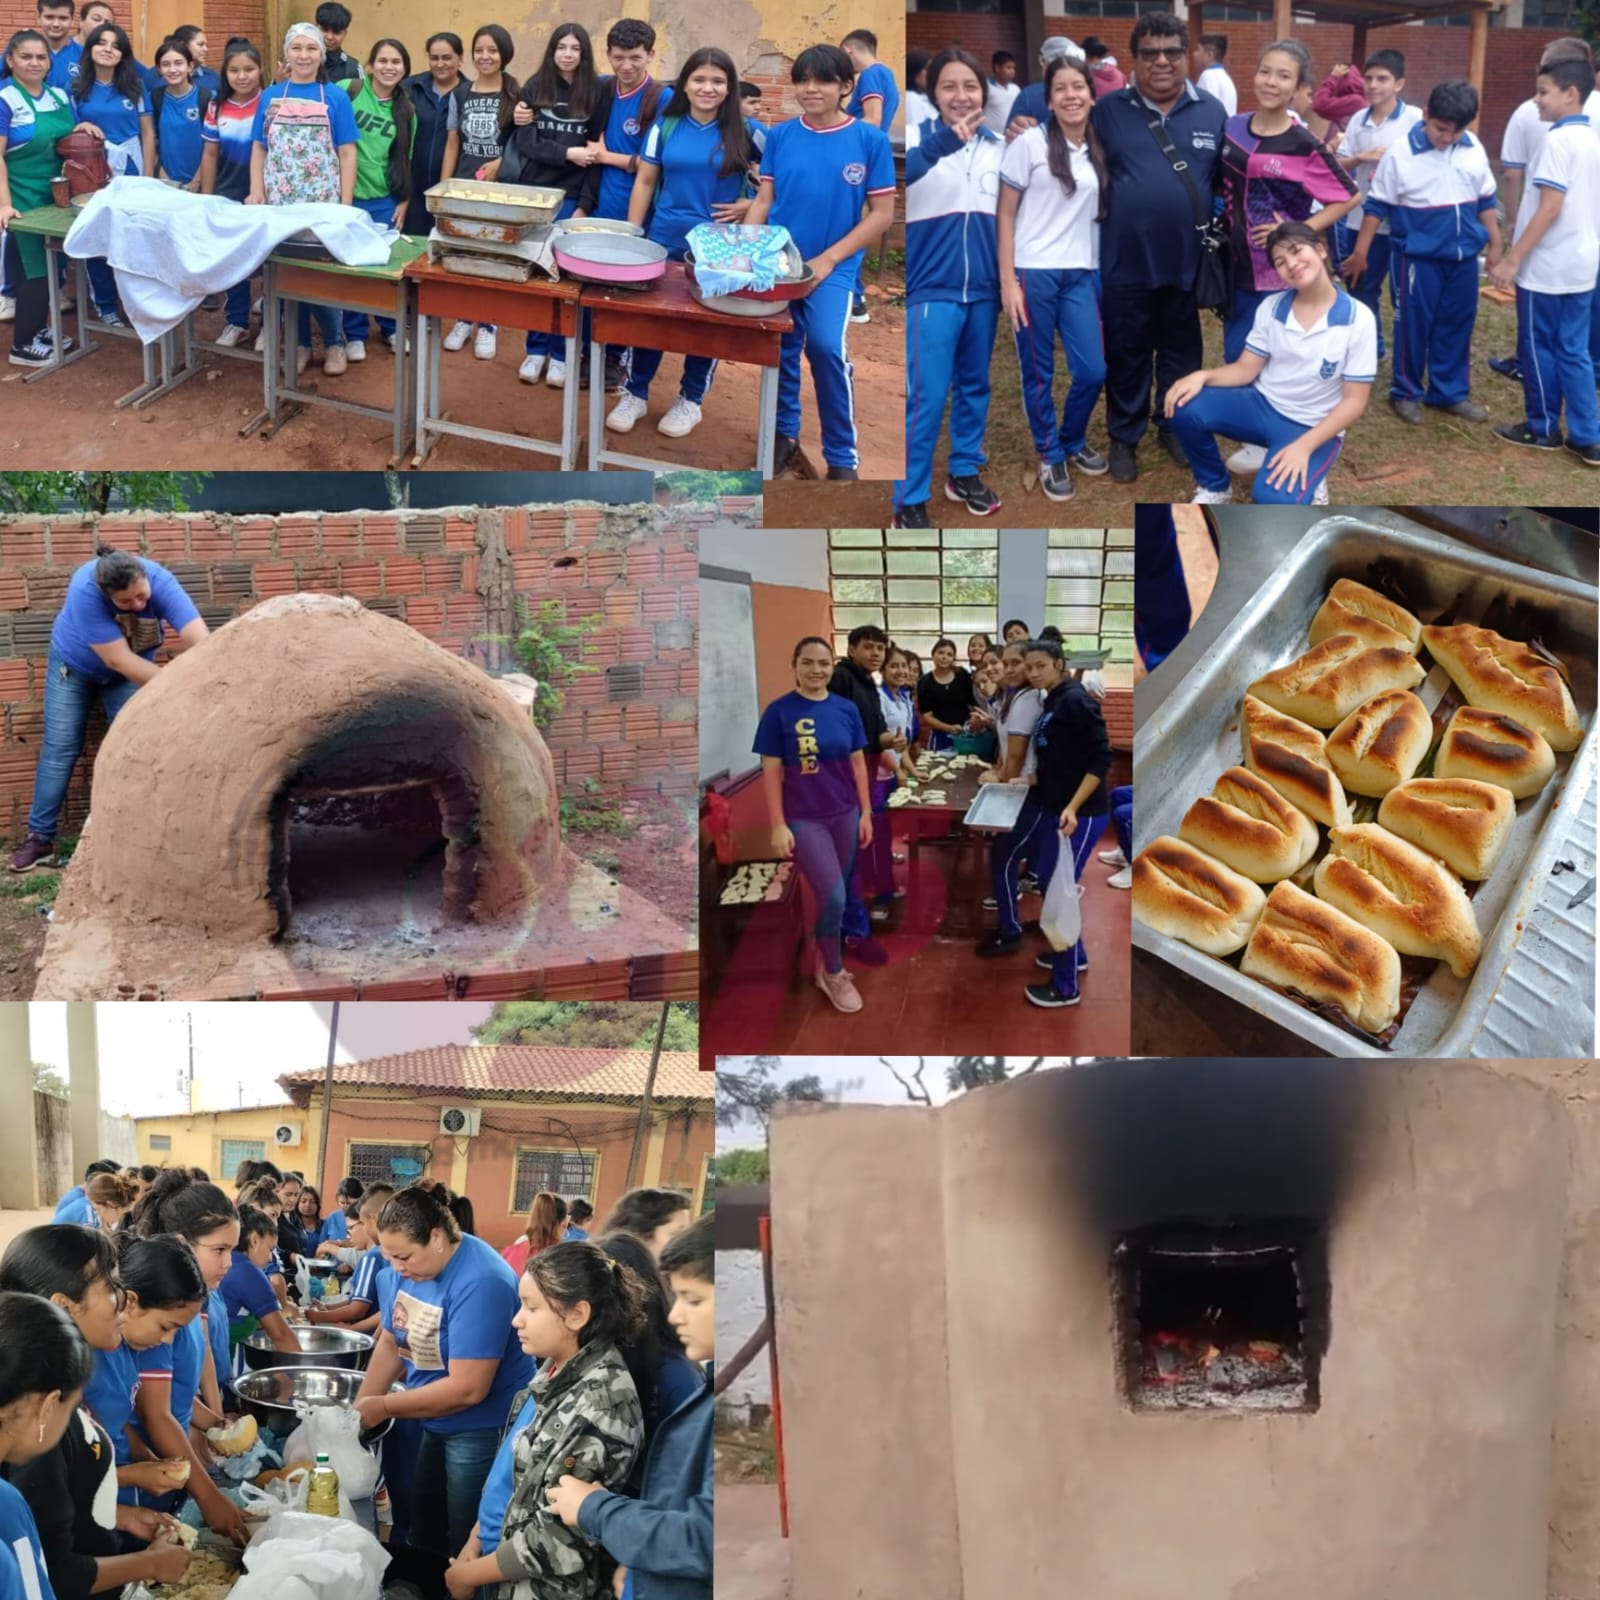 Cultivando las tradiciones paraguayas en distintas instituciones educativas